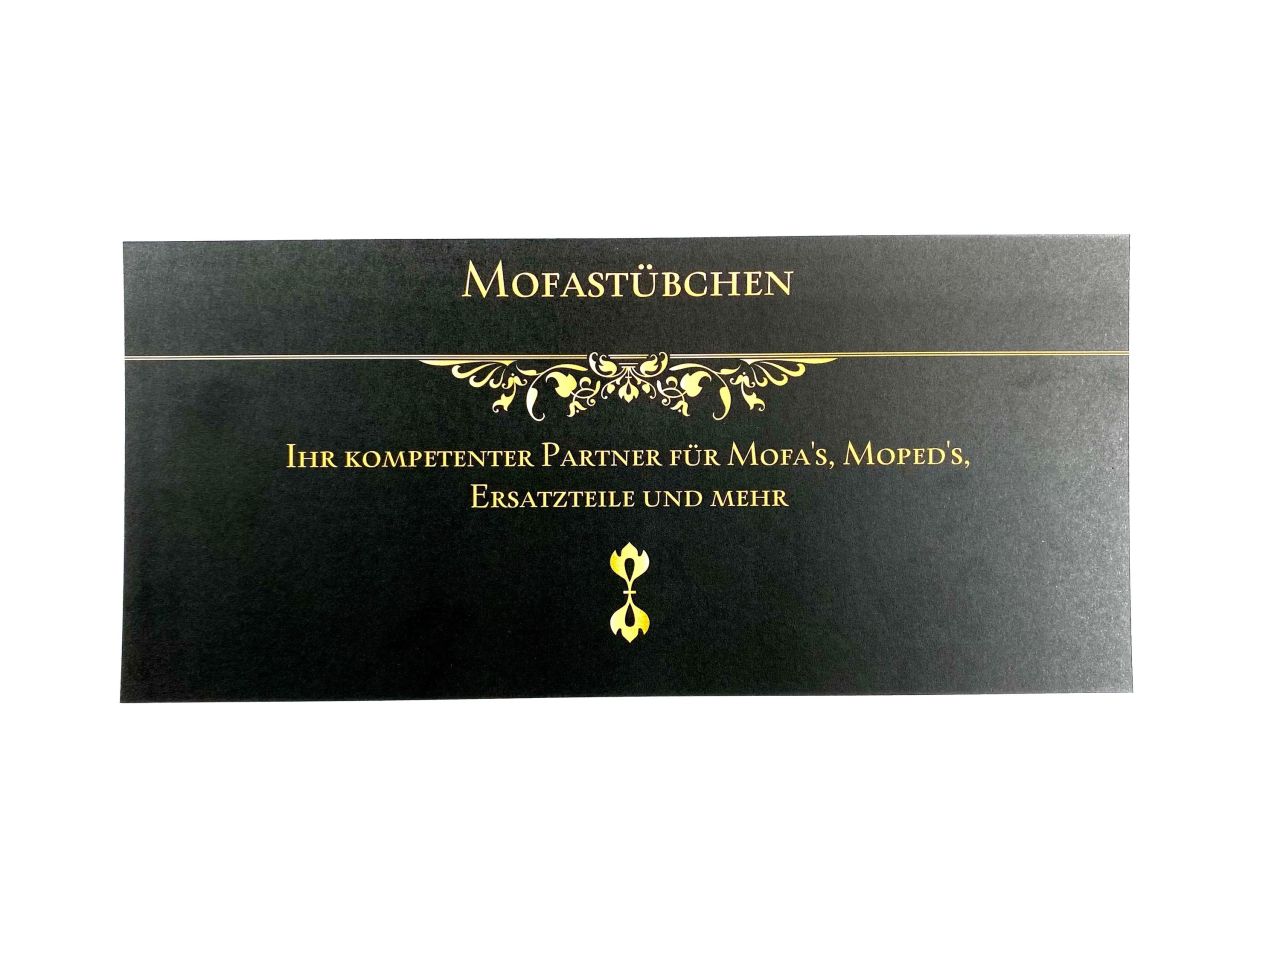 Mofa-Stübchen Gutschein im Wert von 100 Euro von Keine Angabe